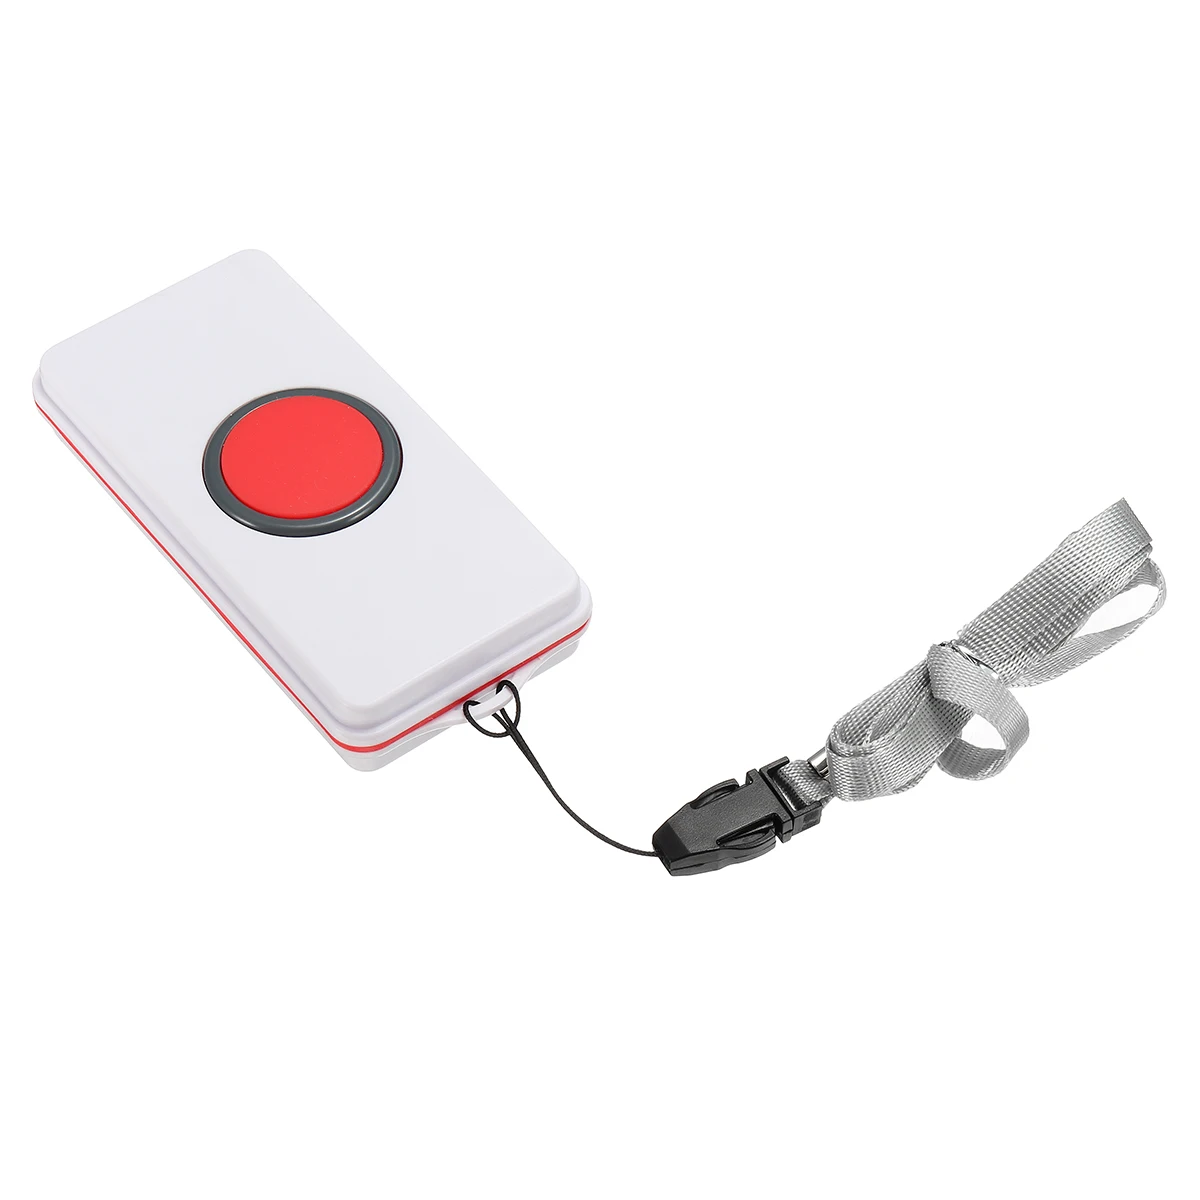 Беспроводной SOS аварийный набор аварийной сигнализации комплекты для пожилых людей помощь пейджер Домашняя безопасность колокольчик тревожная кнопка устройство для вызова инвалидов